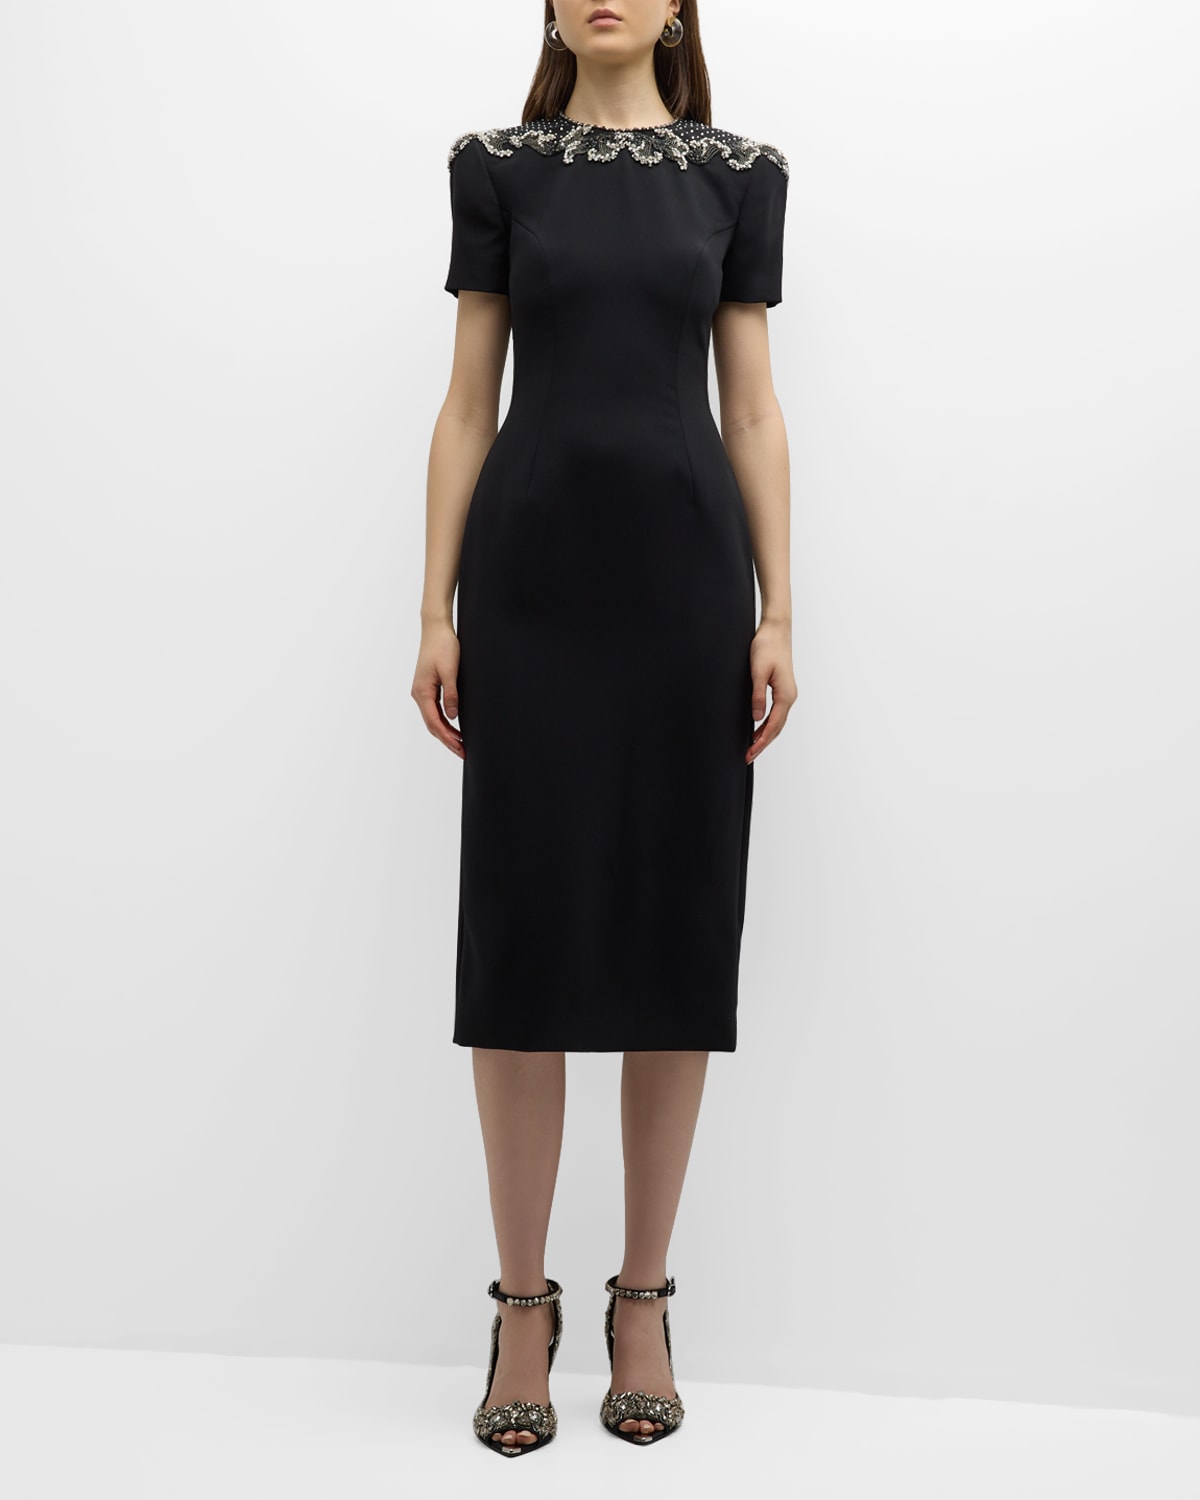 Jenny Packham Lana Embellished Sheath Dress In Black